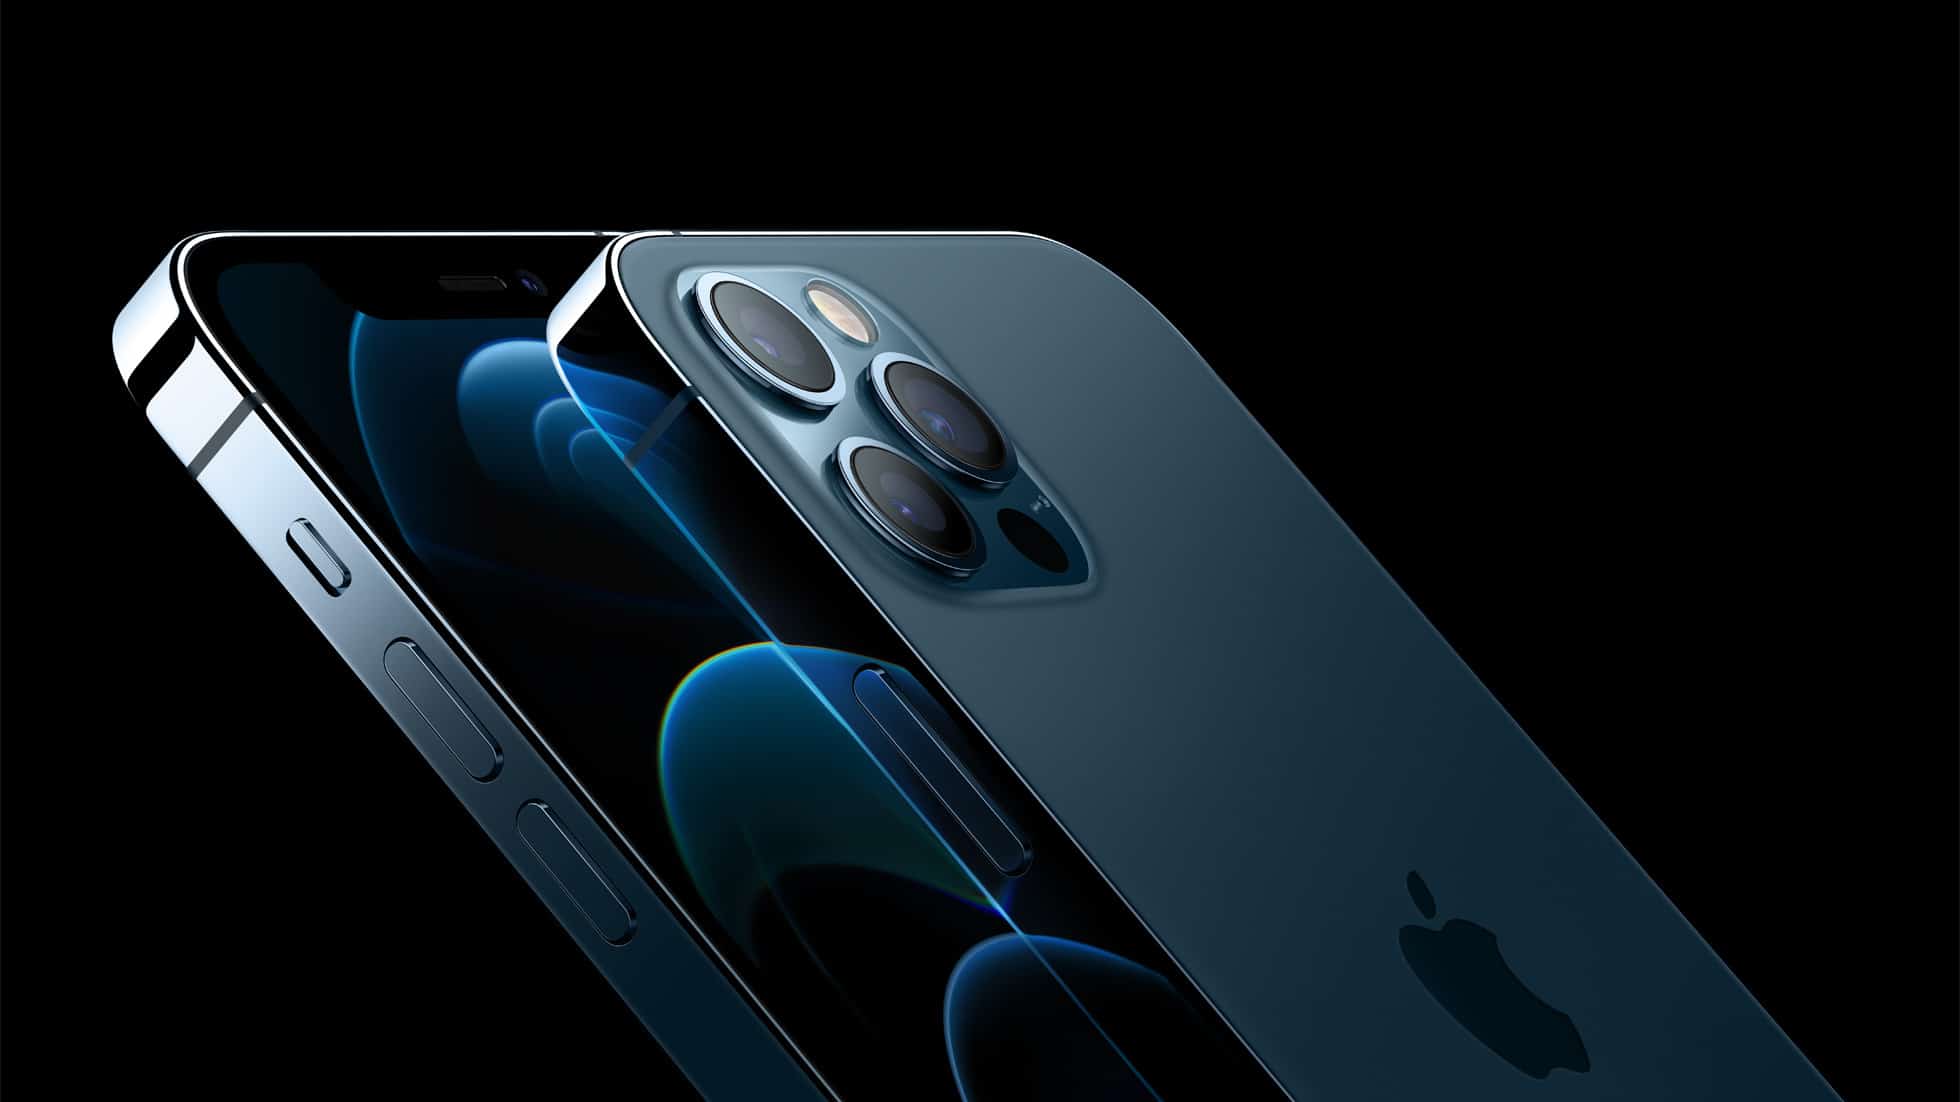 Apple sẽ sửa lỗi mạng 5G trong chế độ hai SIM cho iPhone 12 vào cuối năm nay